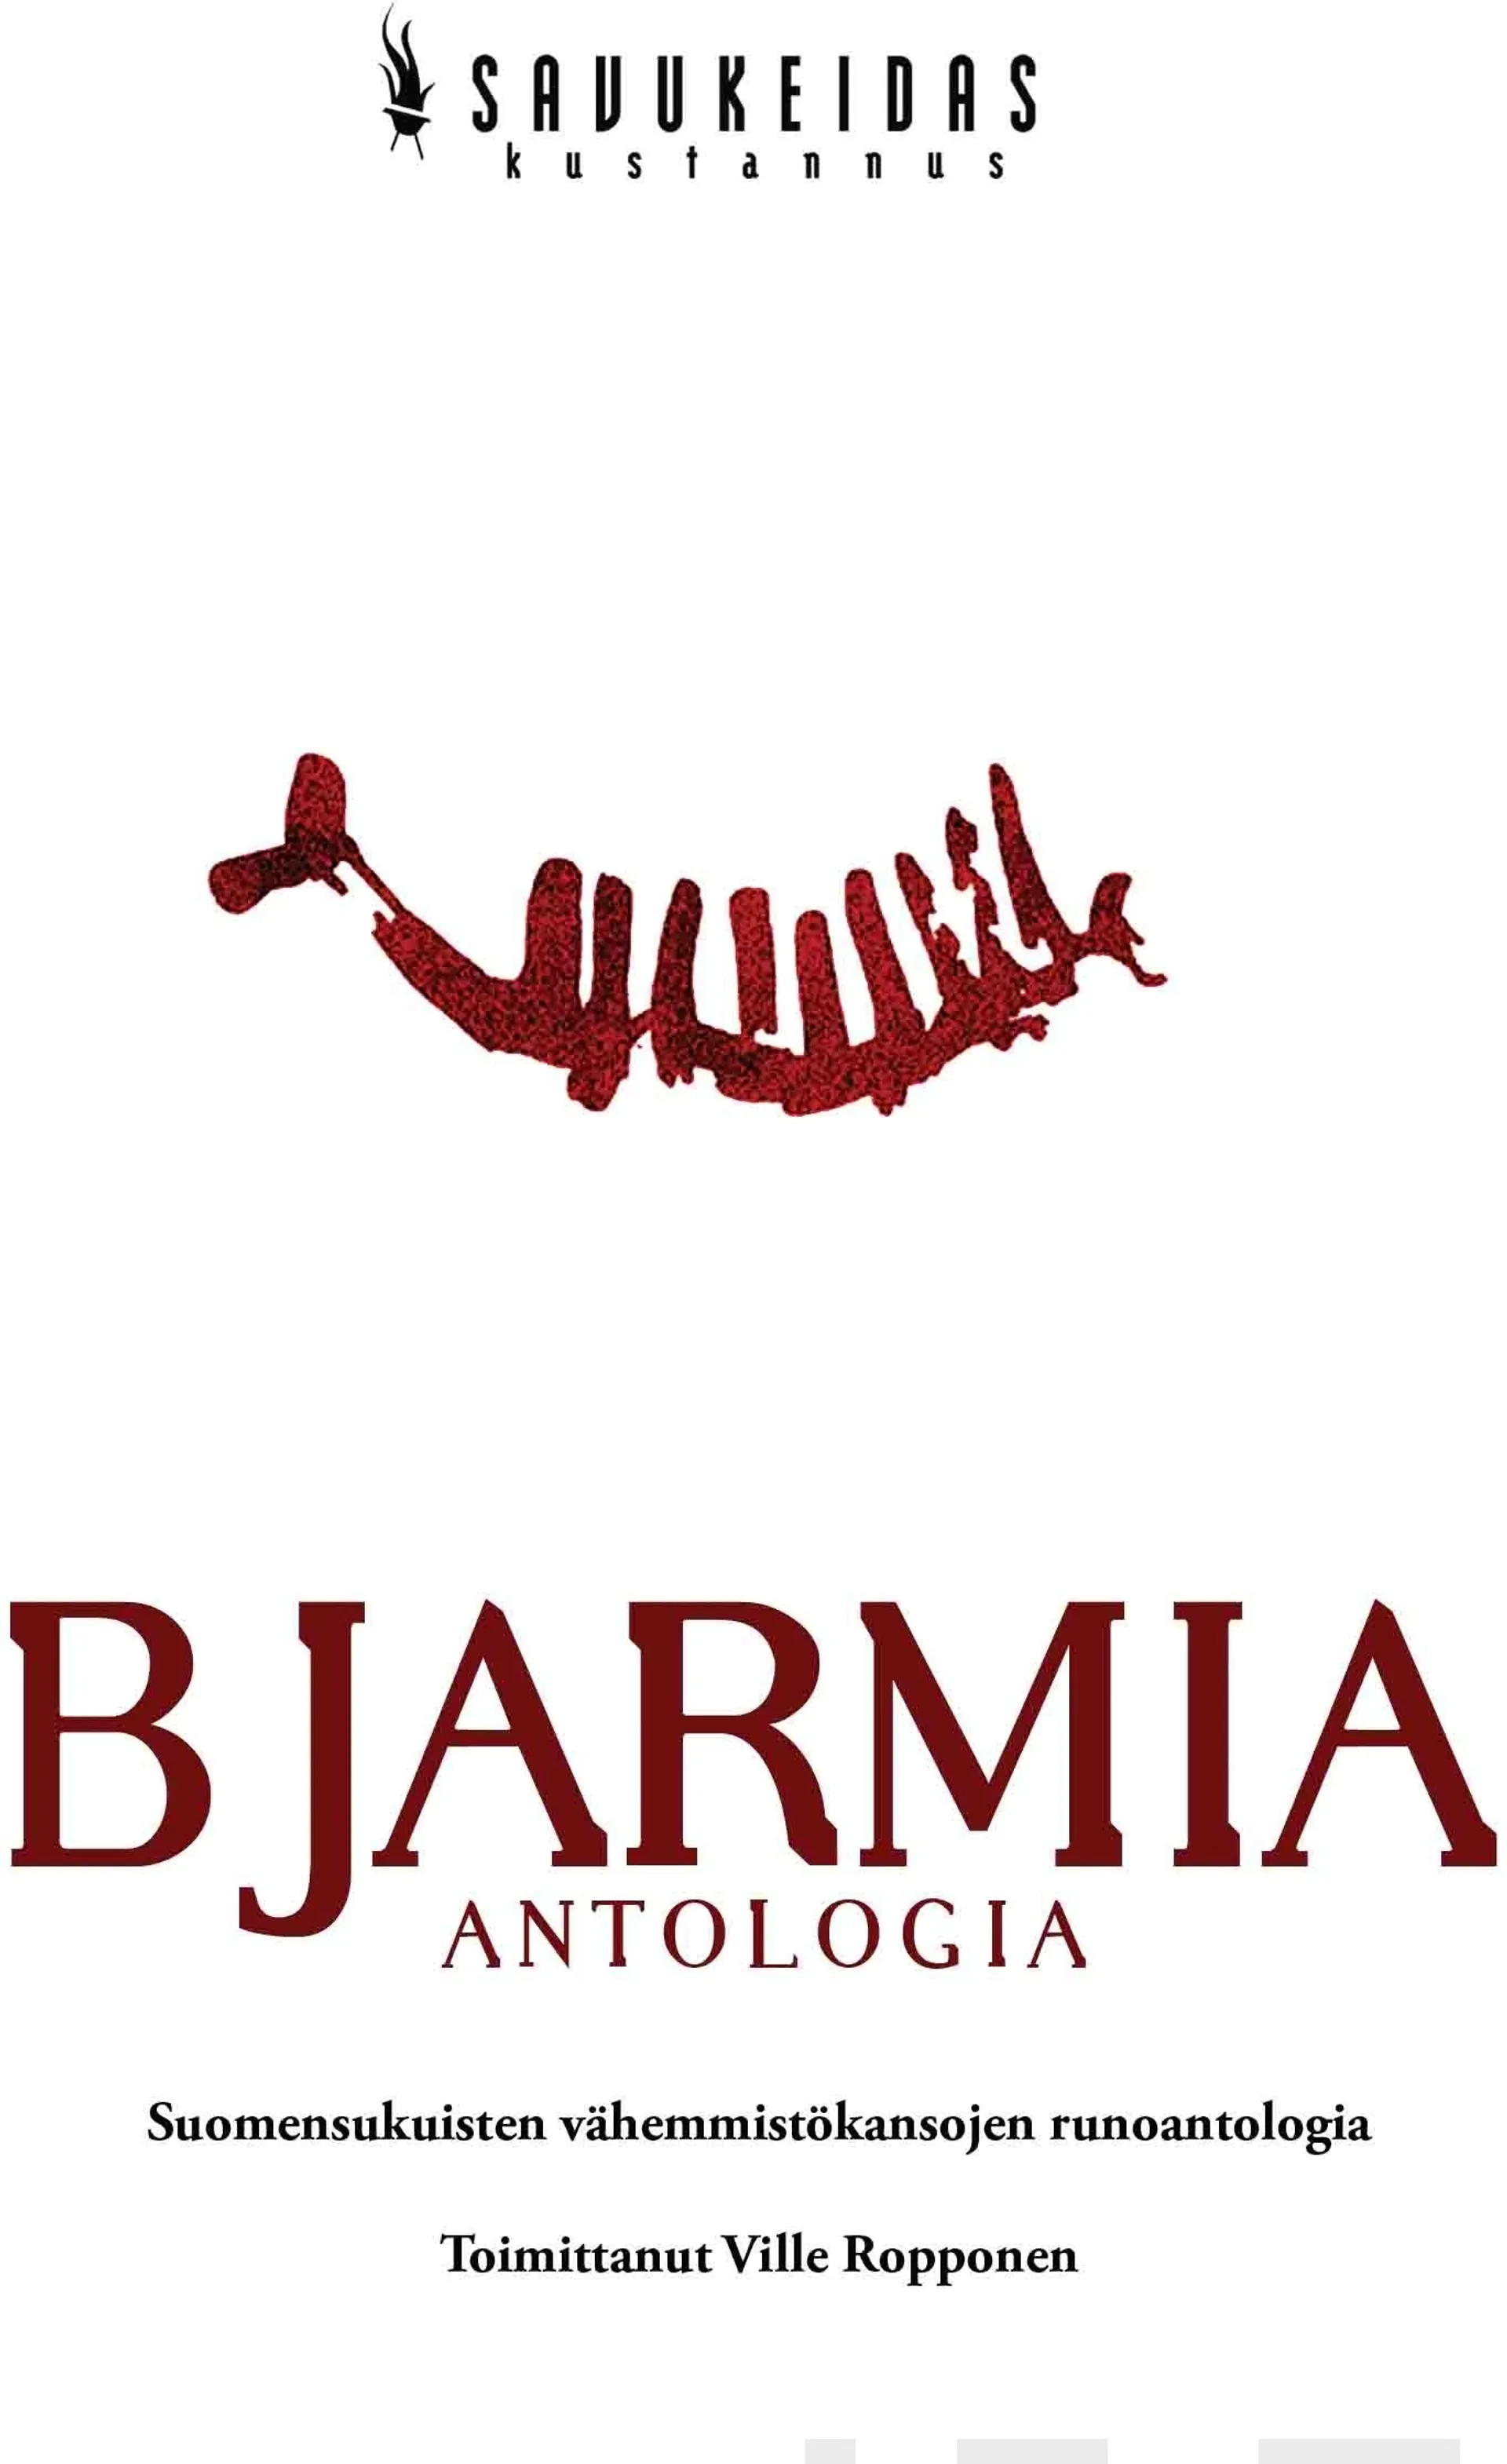 Bjarmia - Antologia